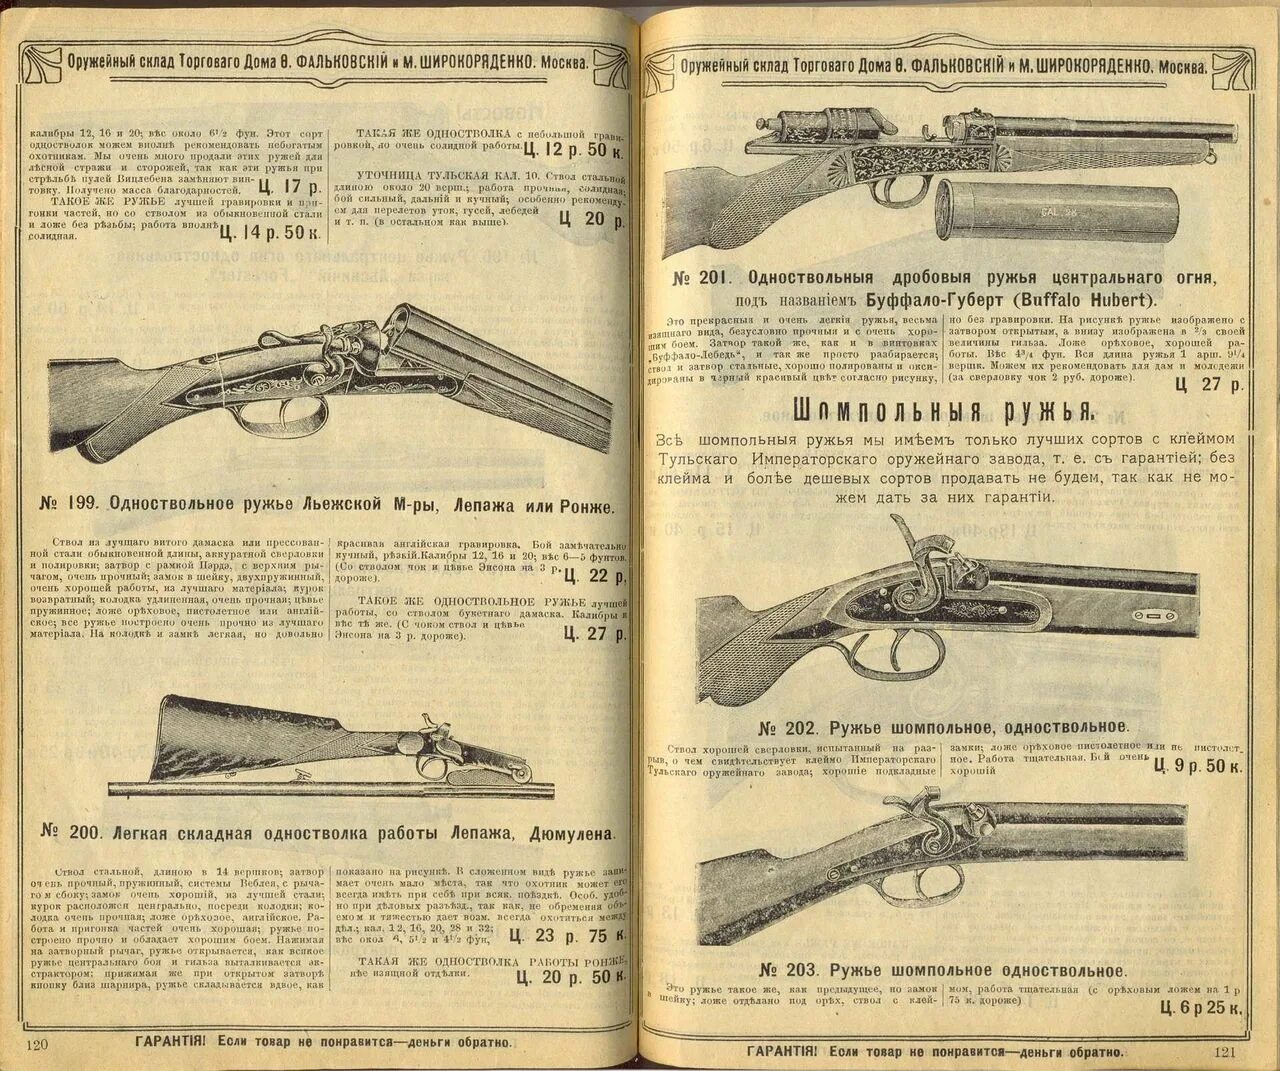 Охотничьи ружья 32 калибра. Охотничьи ружья 19-20 века. Курковое ружье 32 калибра. Ружьё 28 калибра одностволка с затвором.